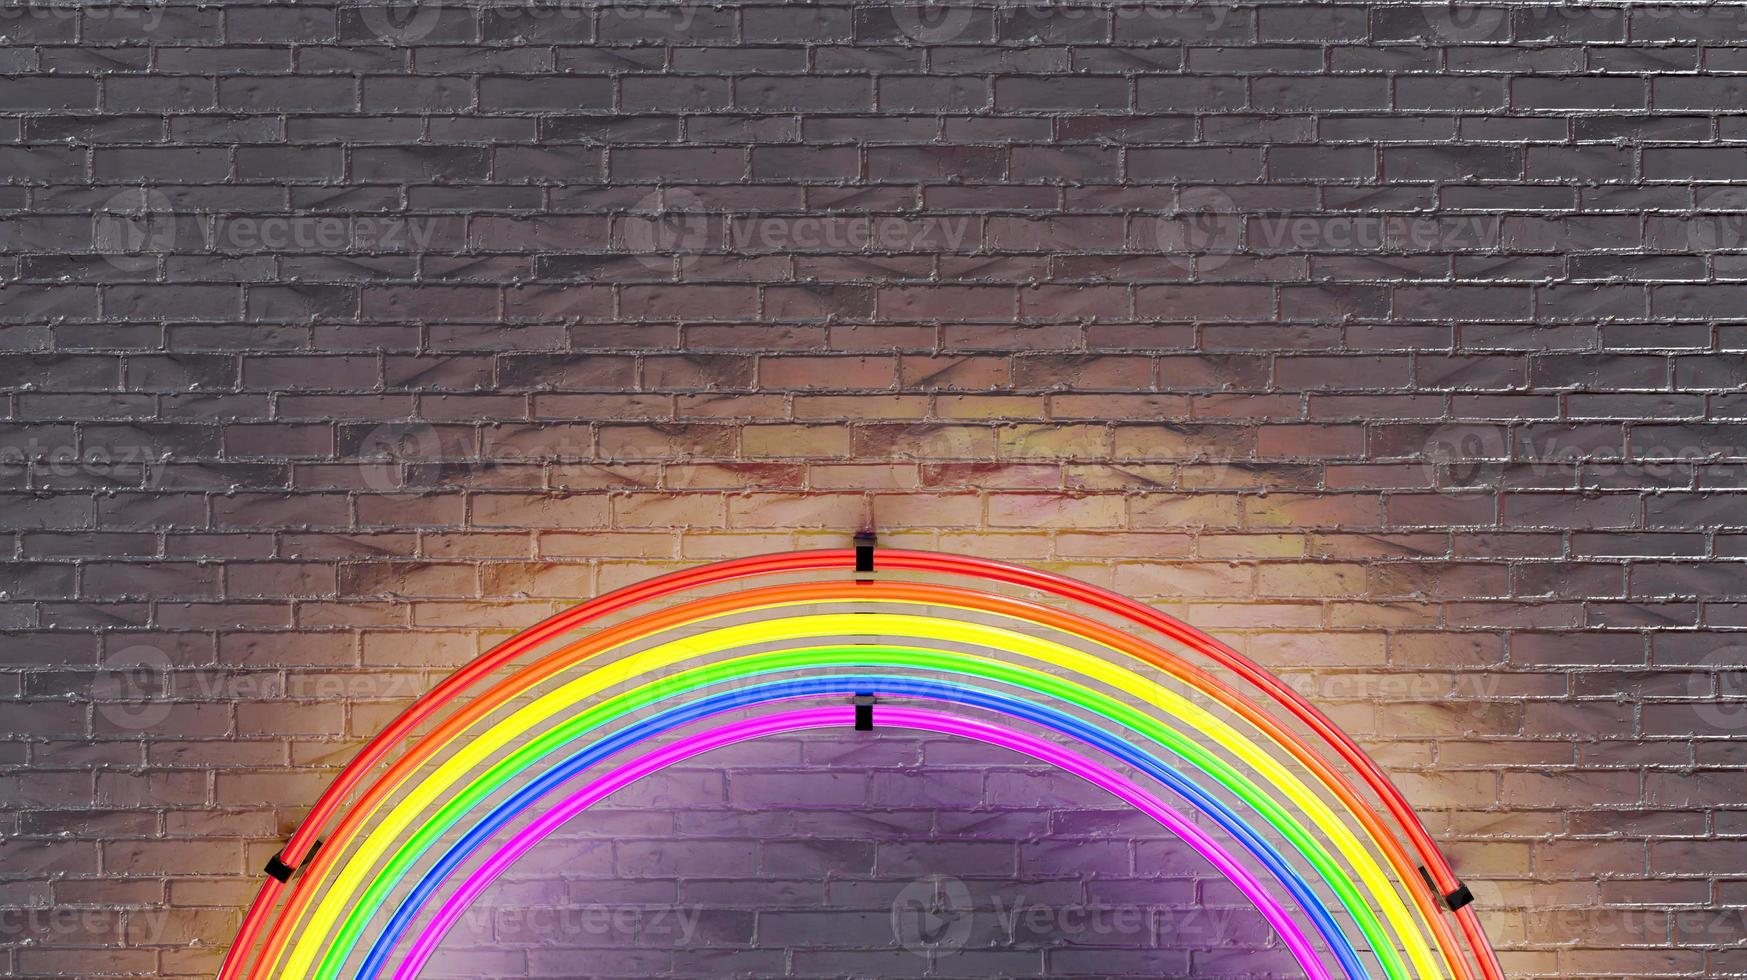 lampada al neon arcobaleno sul muro di mattoni. rendering 3d